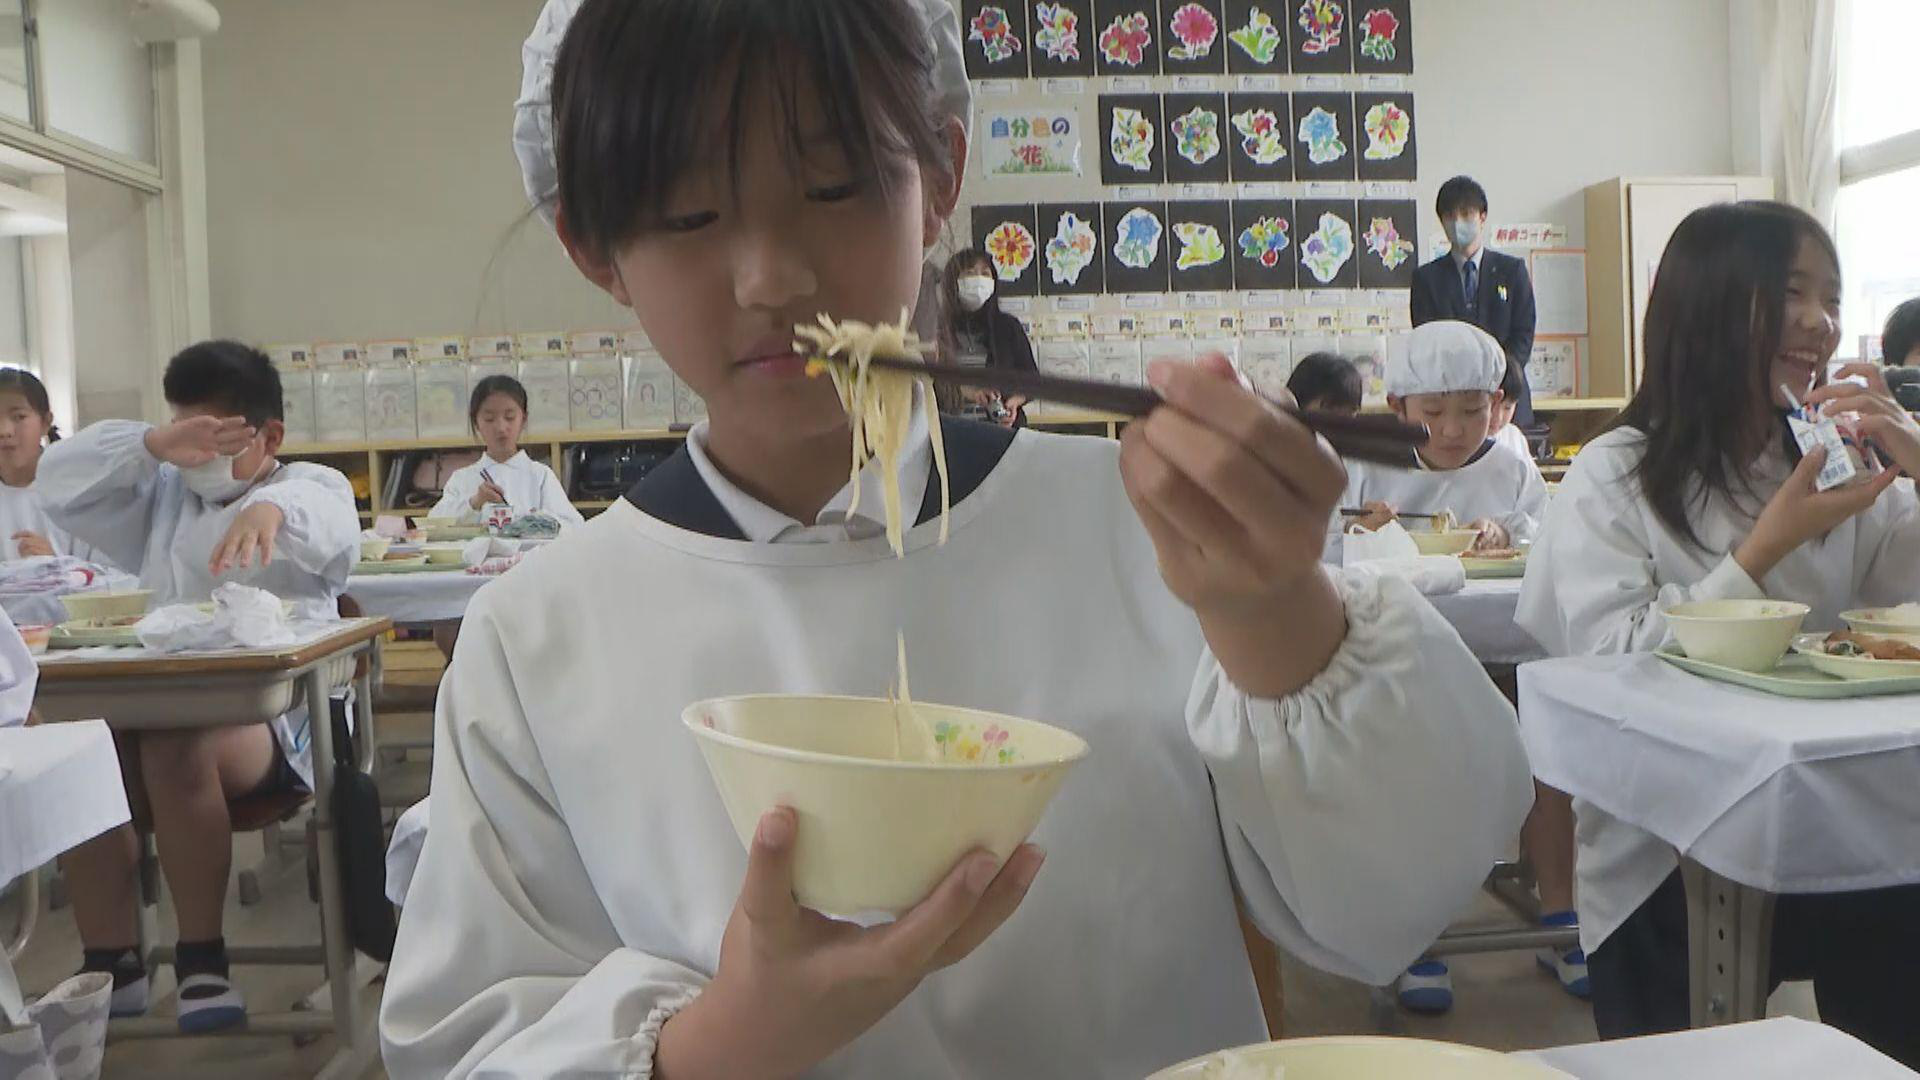 Bún bò Huế vào bữa trưa của trẻ em Nhật: Hơi cay nhưng rất ngon ạ - Ảnh 2.